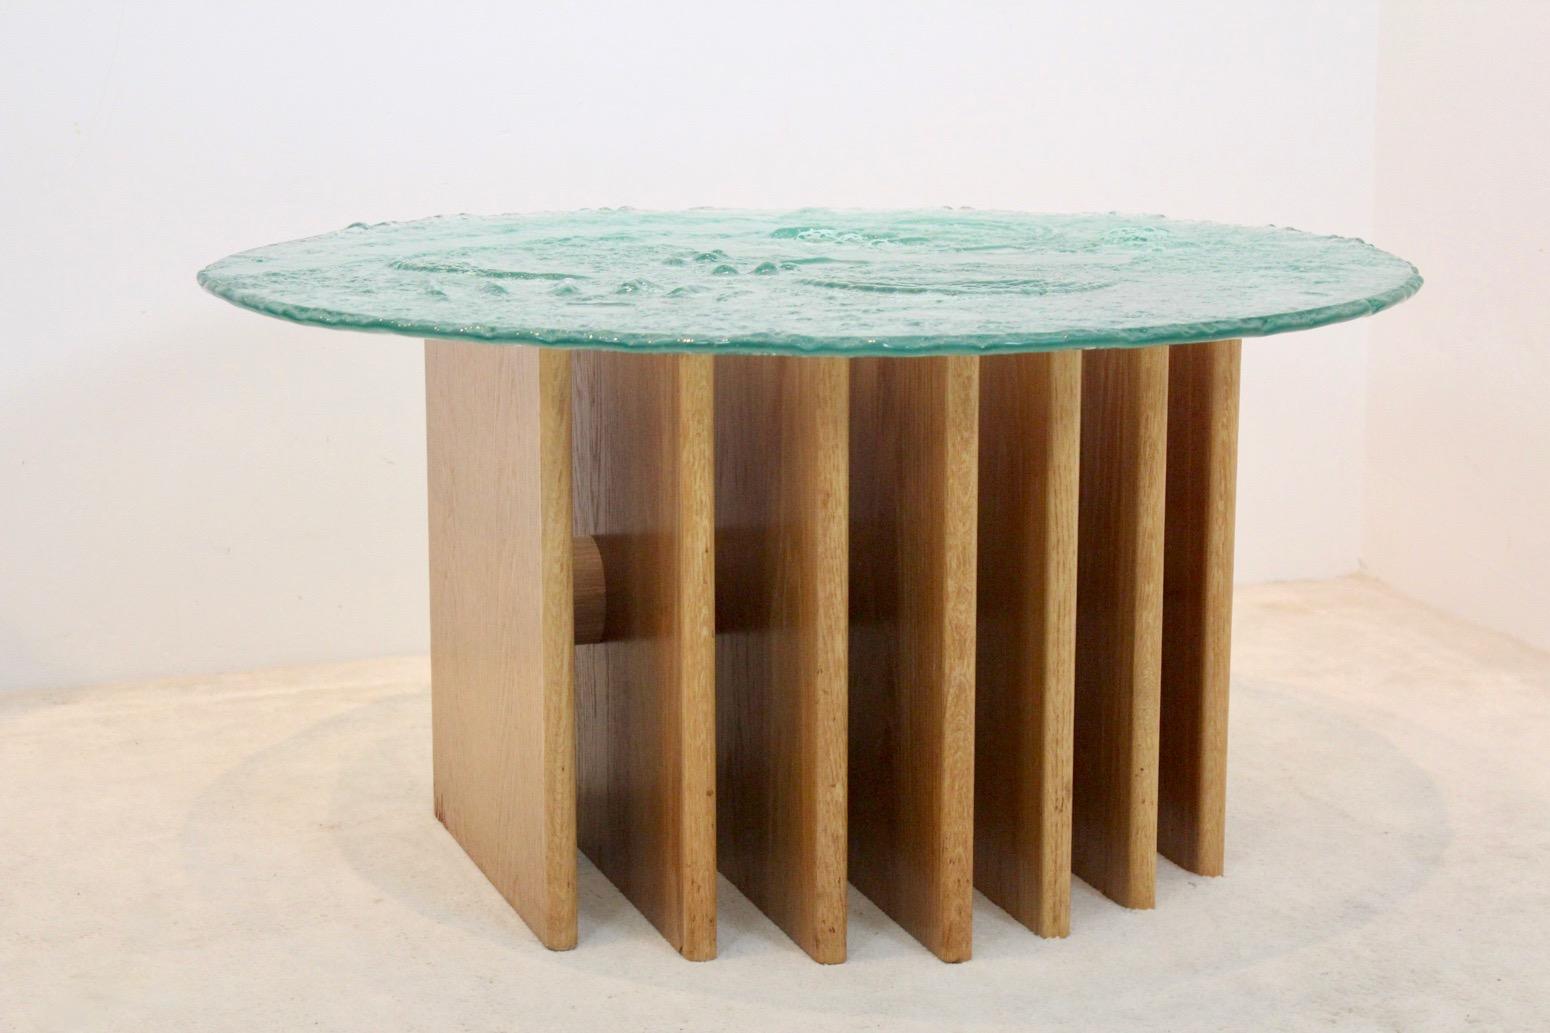 Une très belle table basse Brutalist en verre sur une base en bois à 7 nervures. Conçu par l'artiste allemand Heinz Lilienthal dans les années 1970. Le bois est très solide et fait avec du placage de chêne et le plateau en verre est très épais et